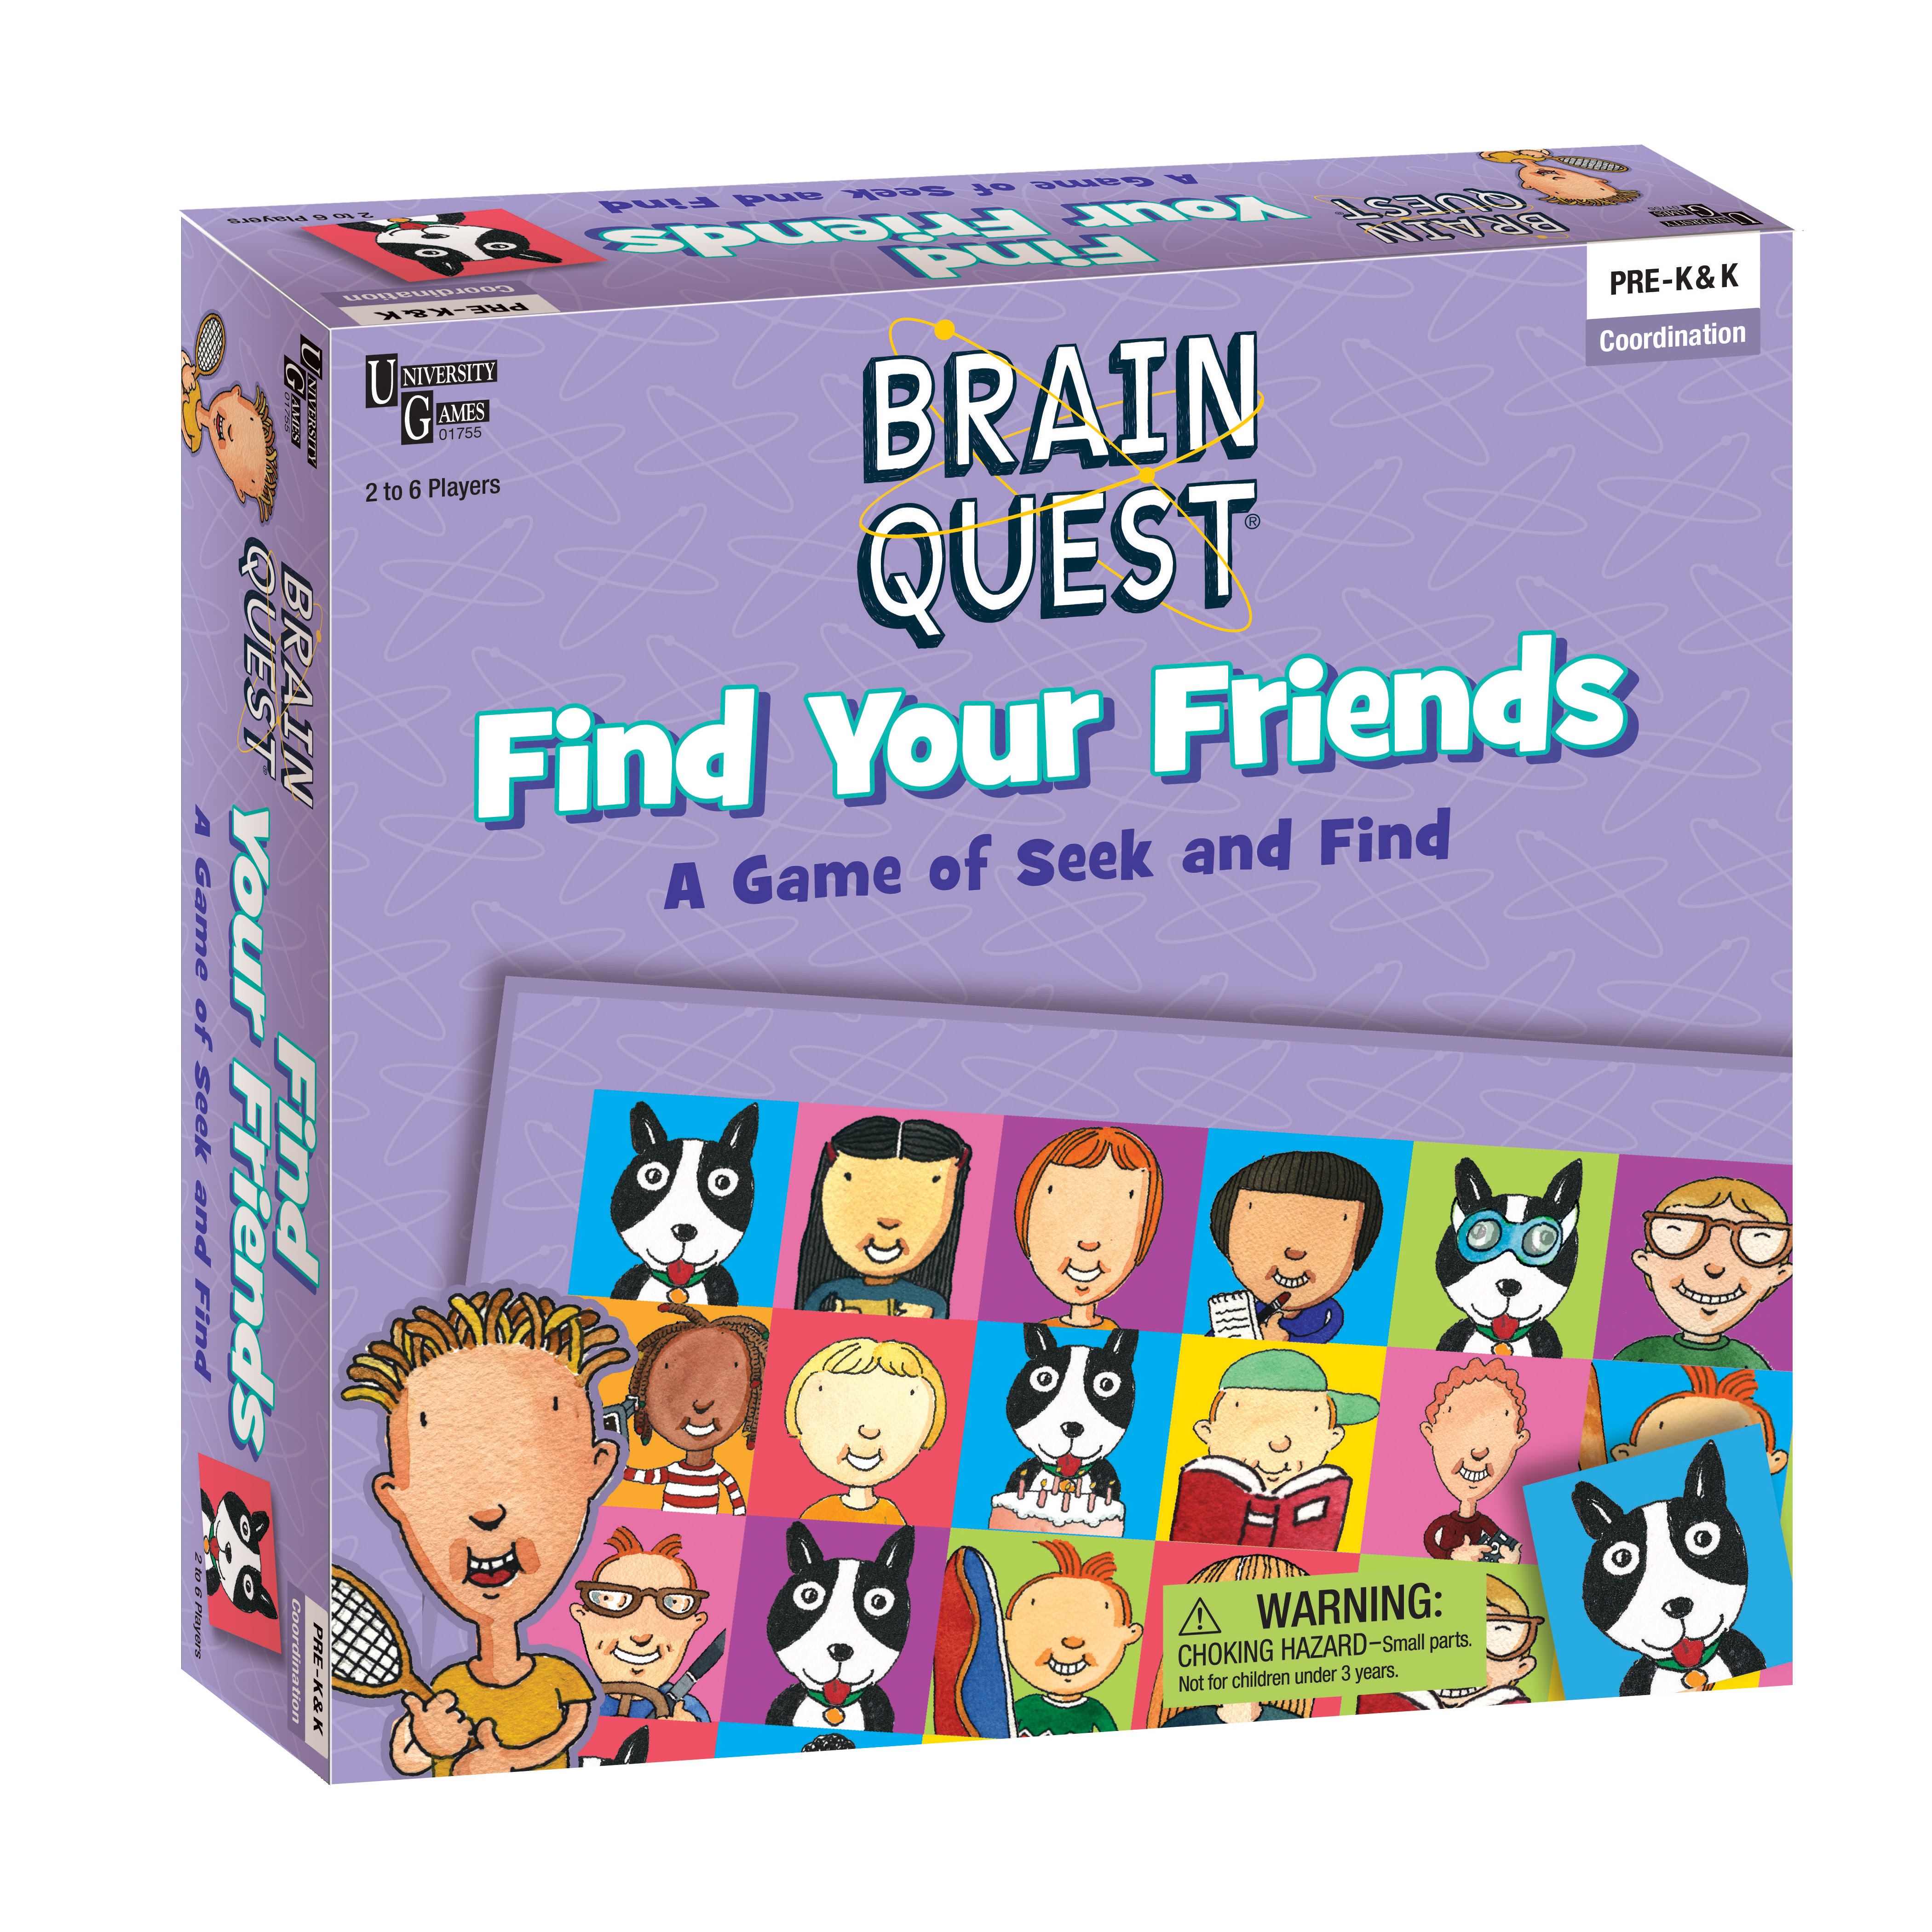 University Games Brain Quest - Find Your Friends